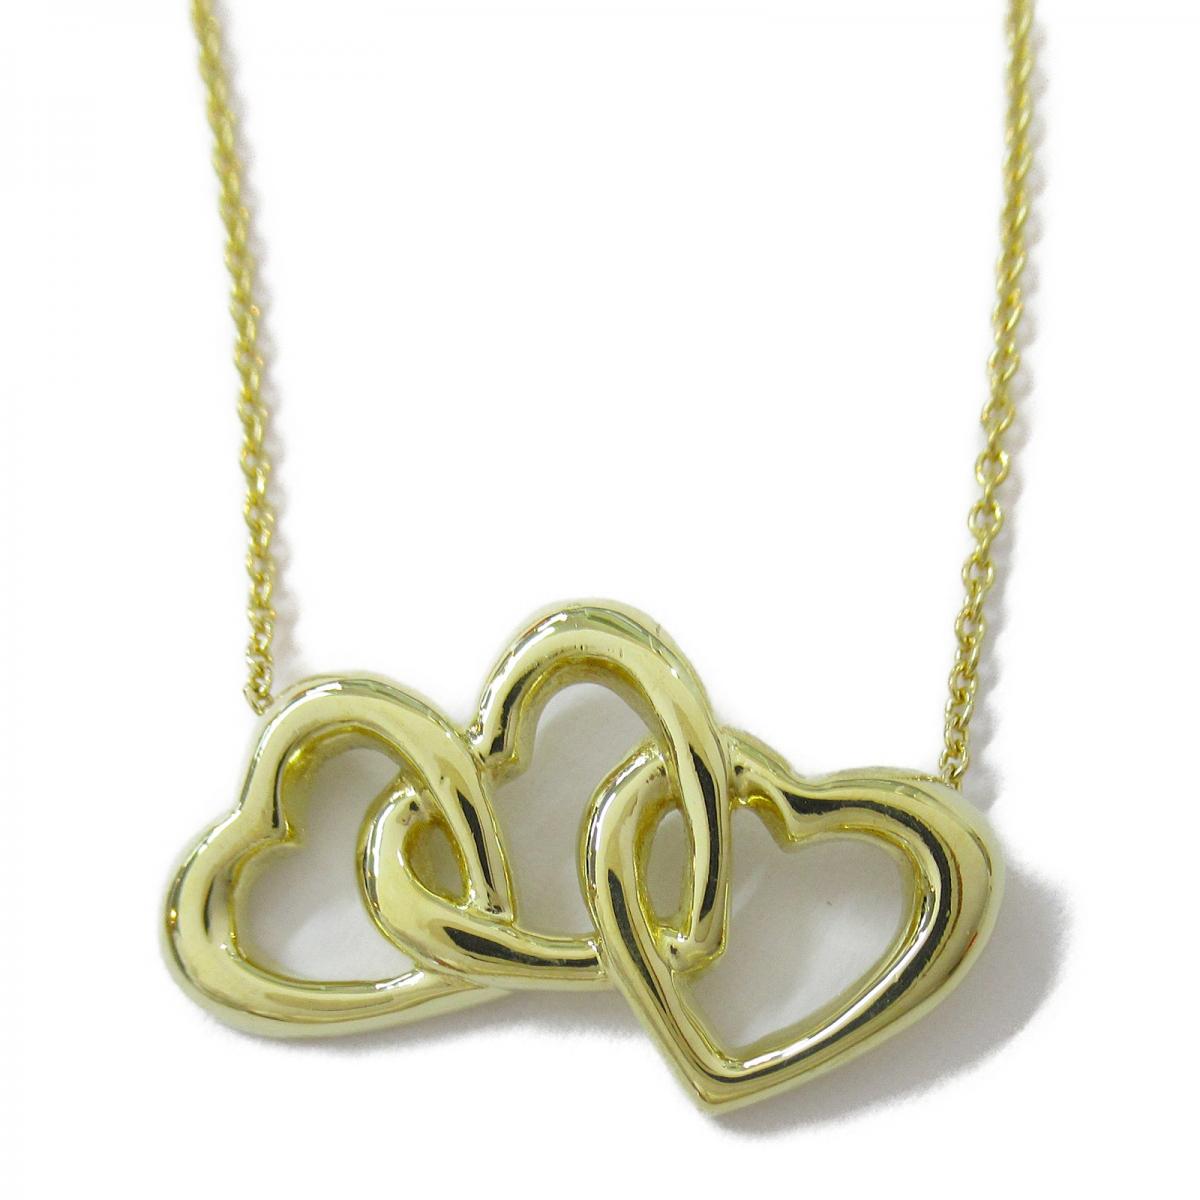 Triple Heart Pendant Necklace